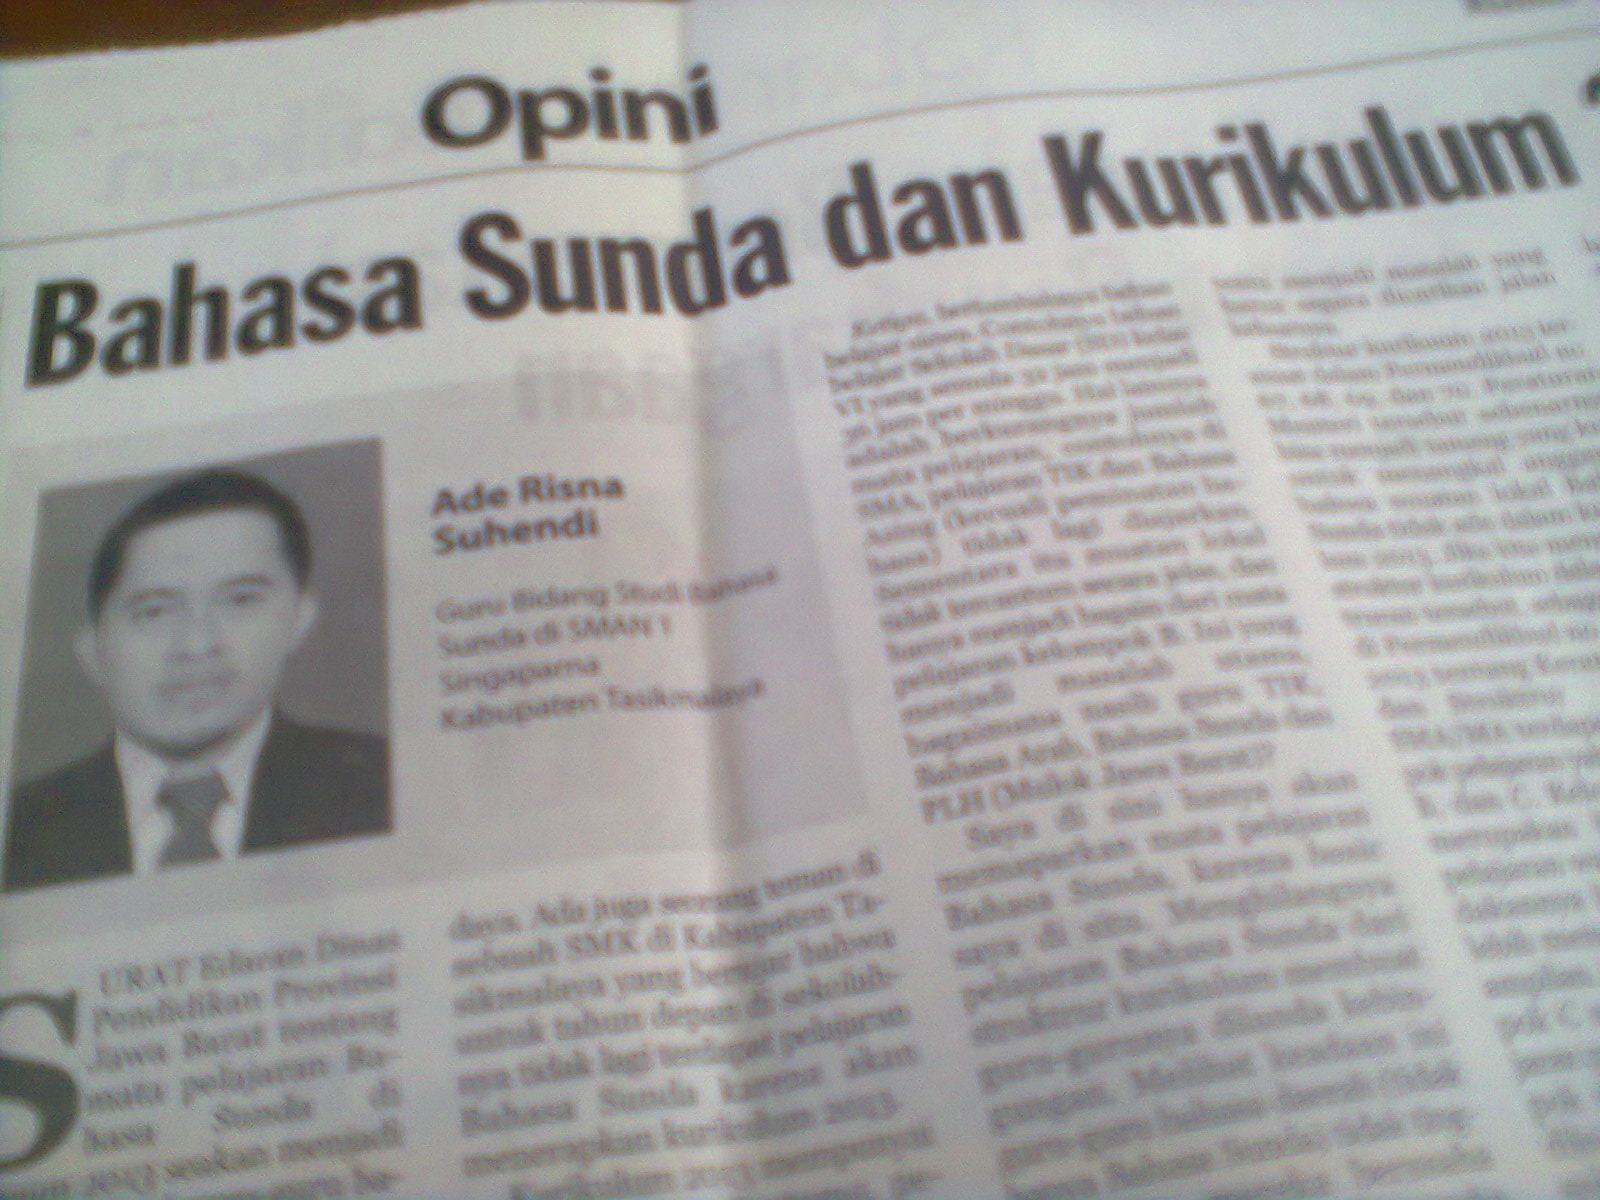 Surat Edaran Dinas Pendidikan Provinsi Jawa Barat tentang mata pelajaran Bhasa Sunda di kurikulum 2013 seakan menjadi angin segar bagi guru guru bahasa